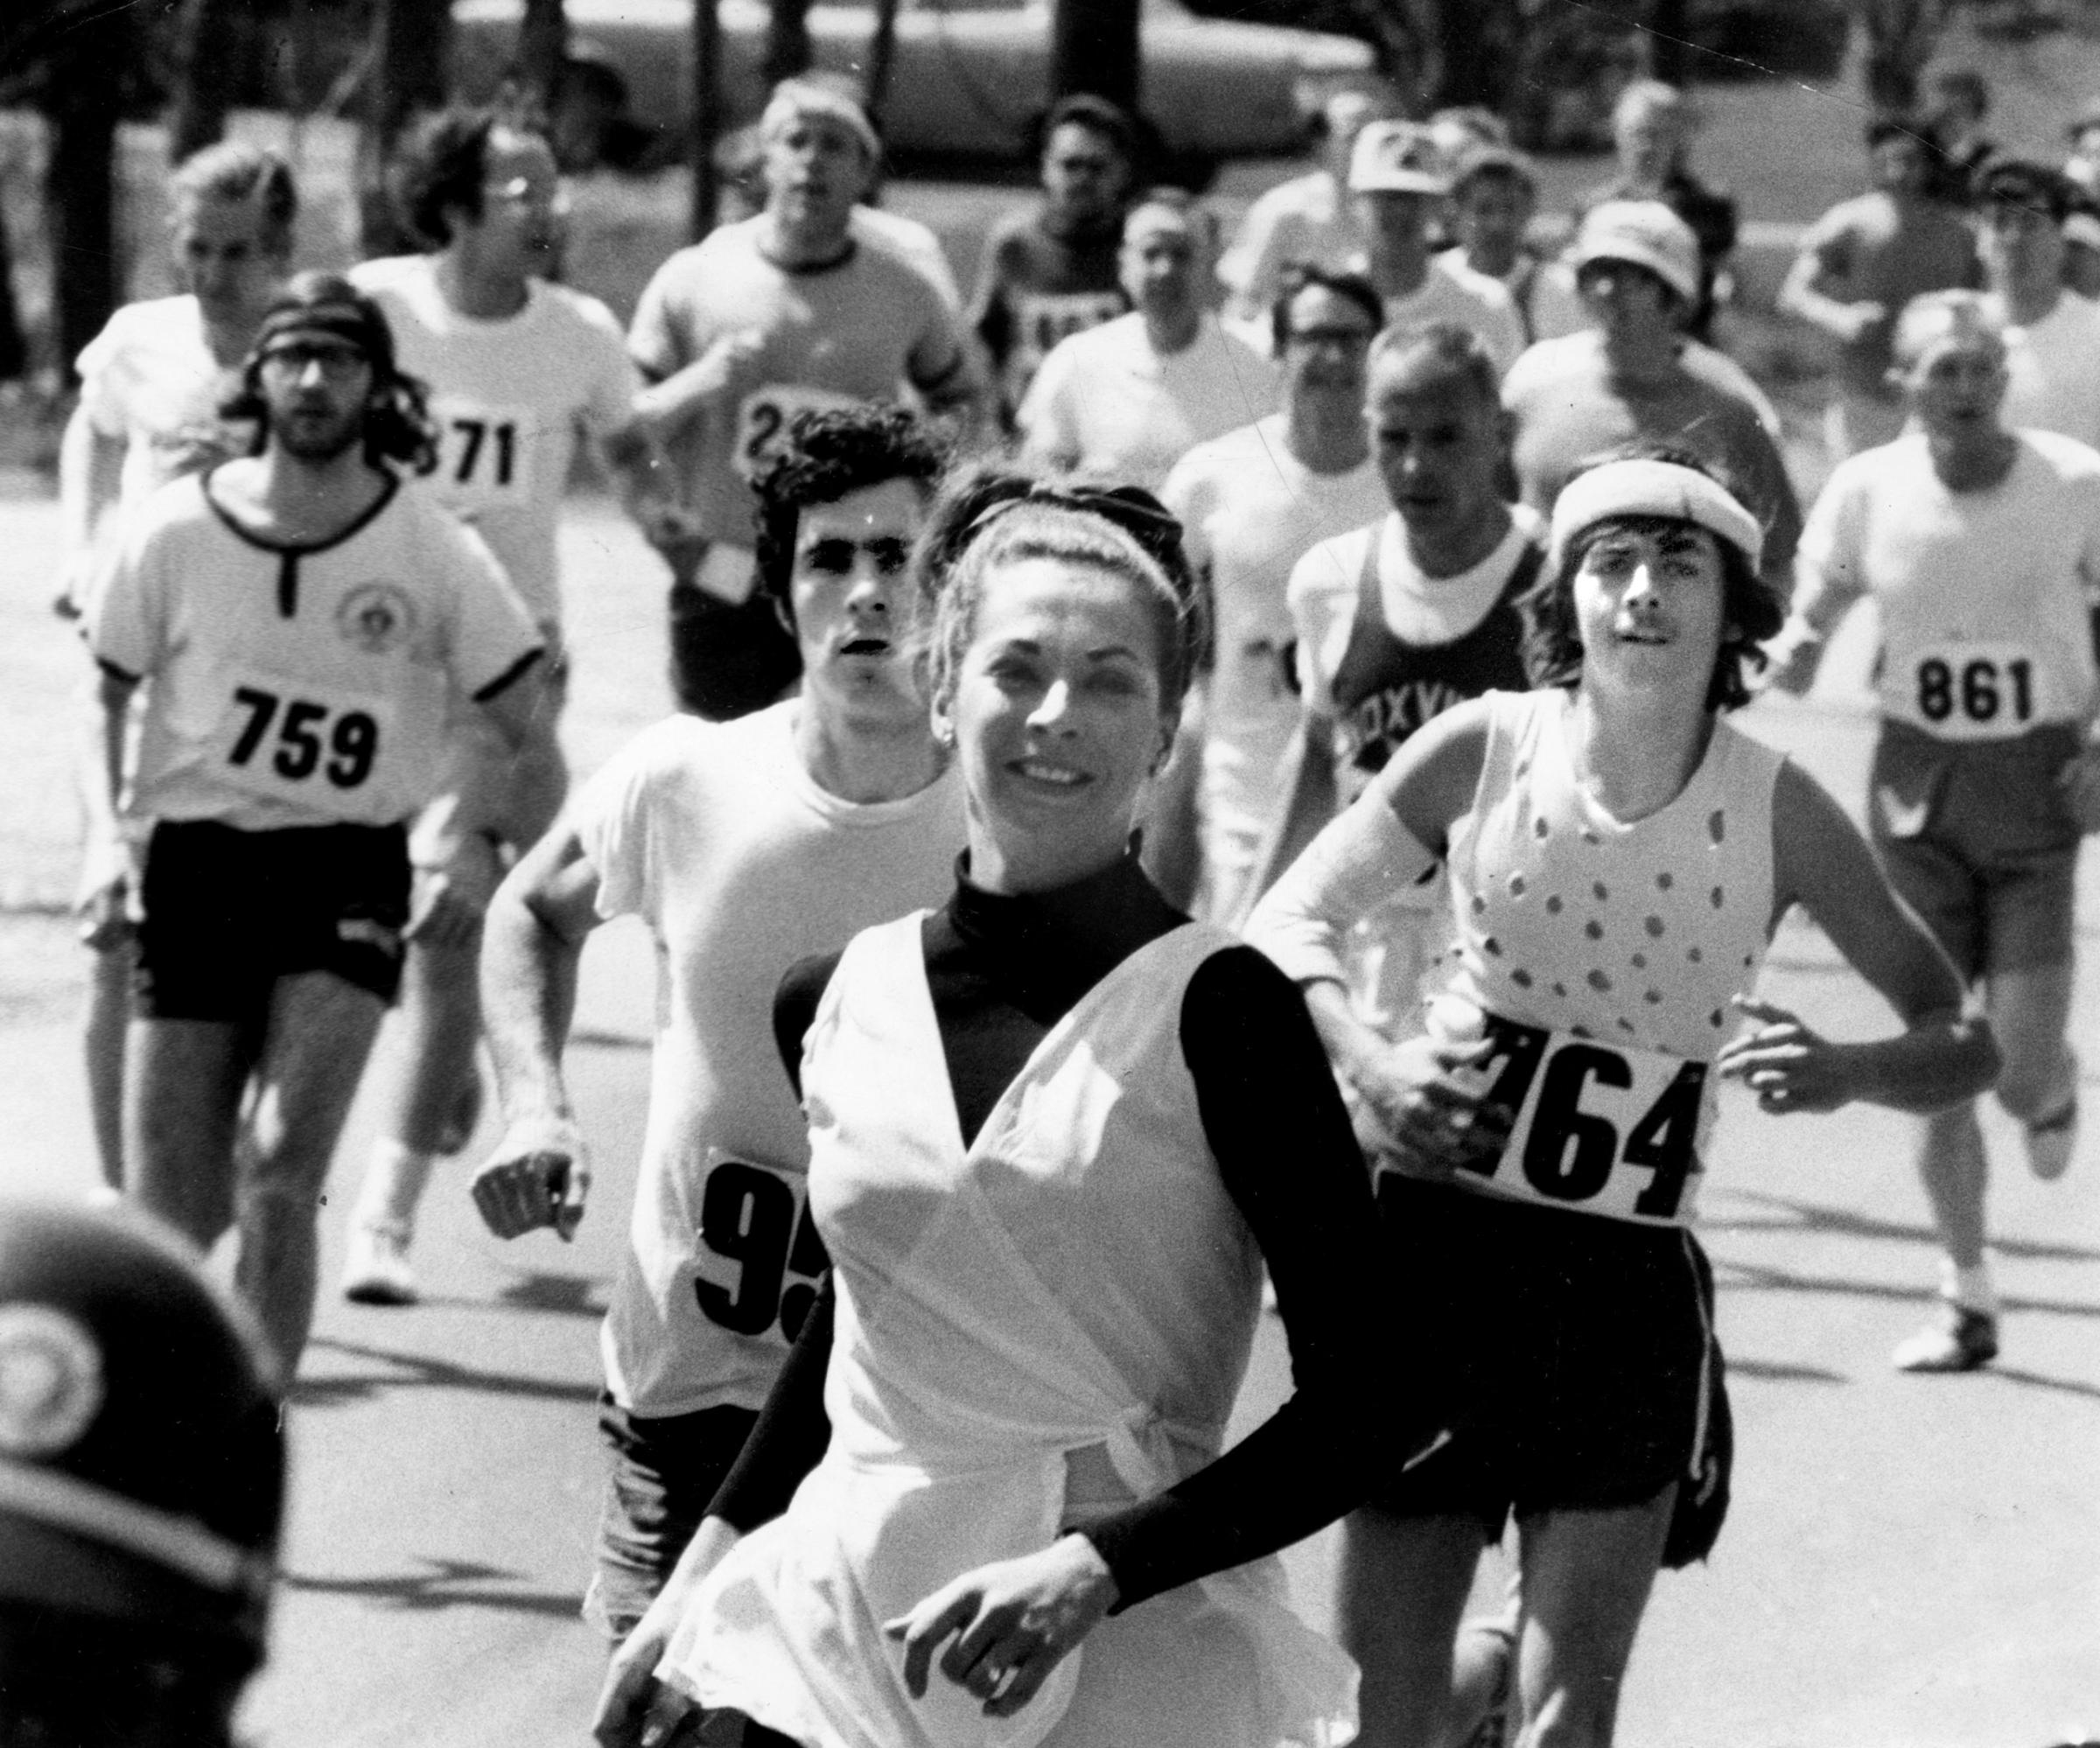 Kathy Switzer runs in the Boston Marathon on April 19, 1971.